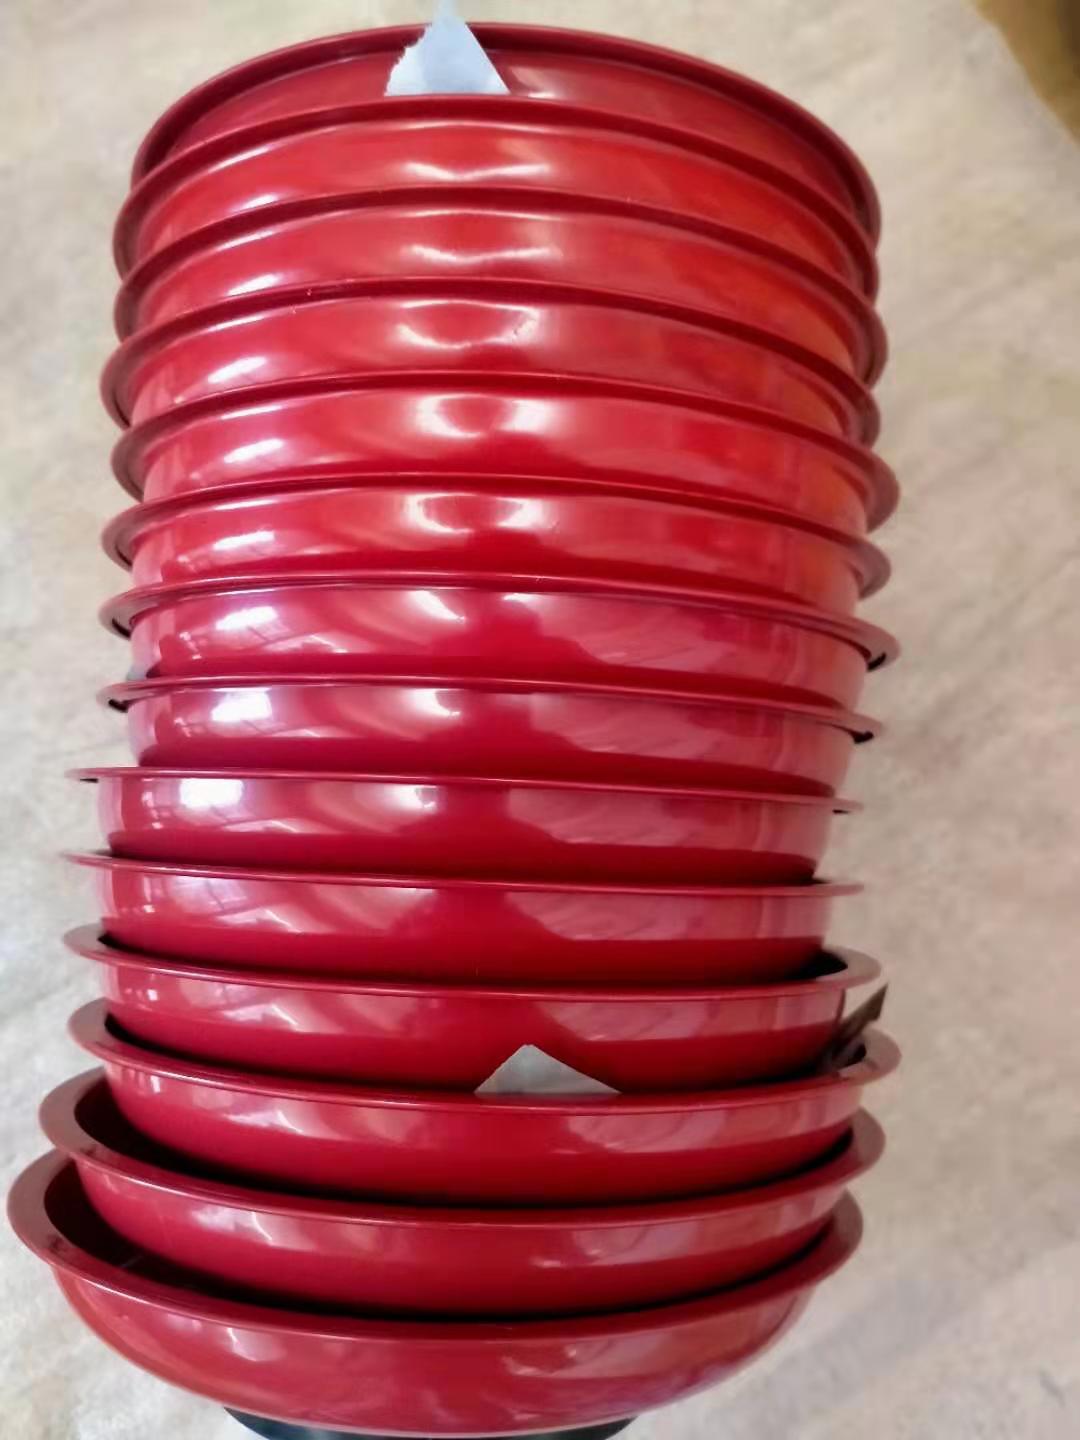 红色喷塑磁性收纳碗 汽保机修磁力盘 底部装配磁铁 网上热销磁碗 可以牢牢吸附在铁制品上在倒挂状态磁碗和小零件都不会滑落3